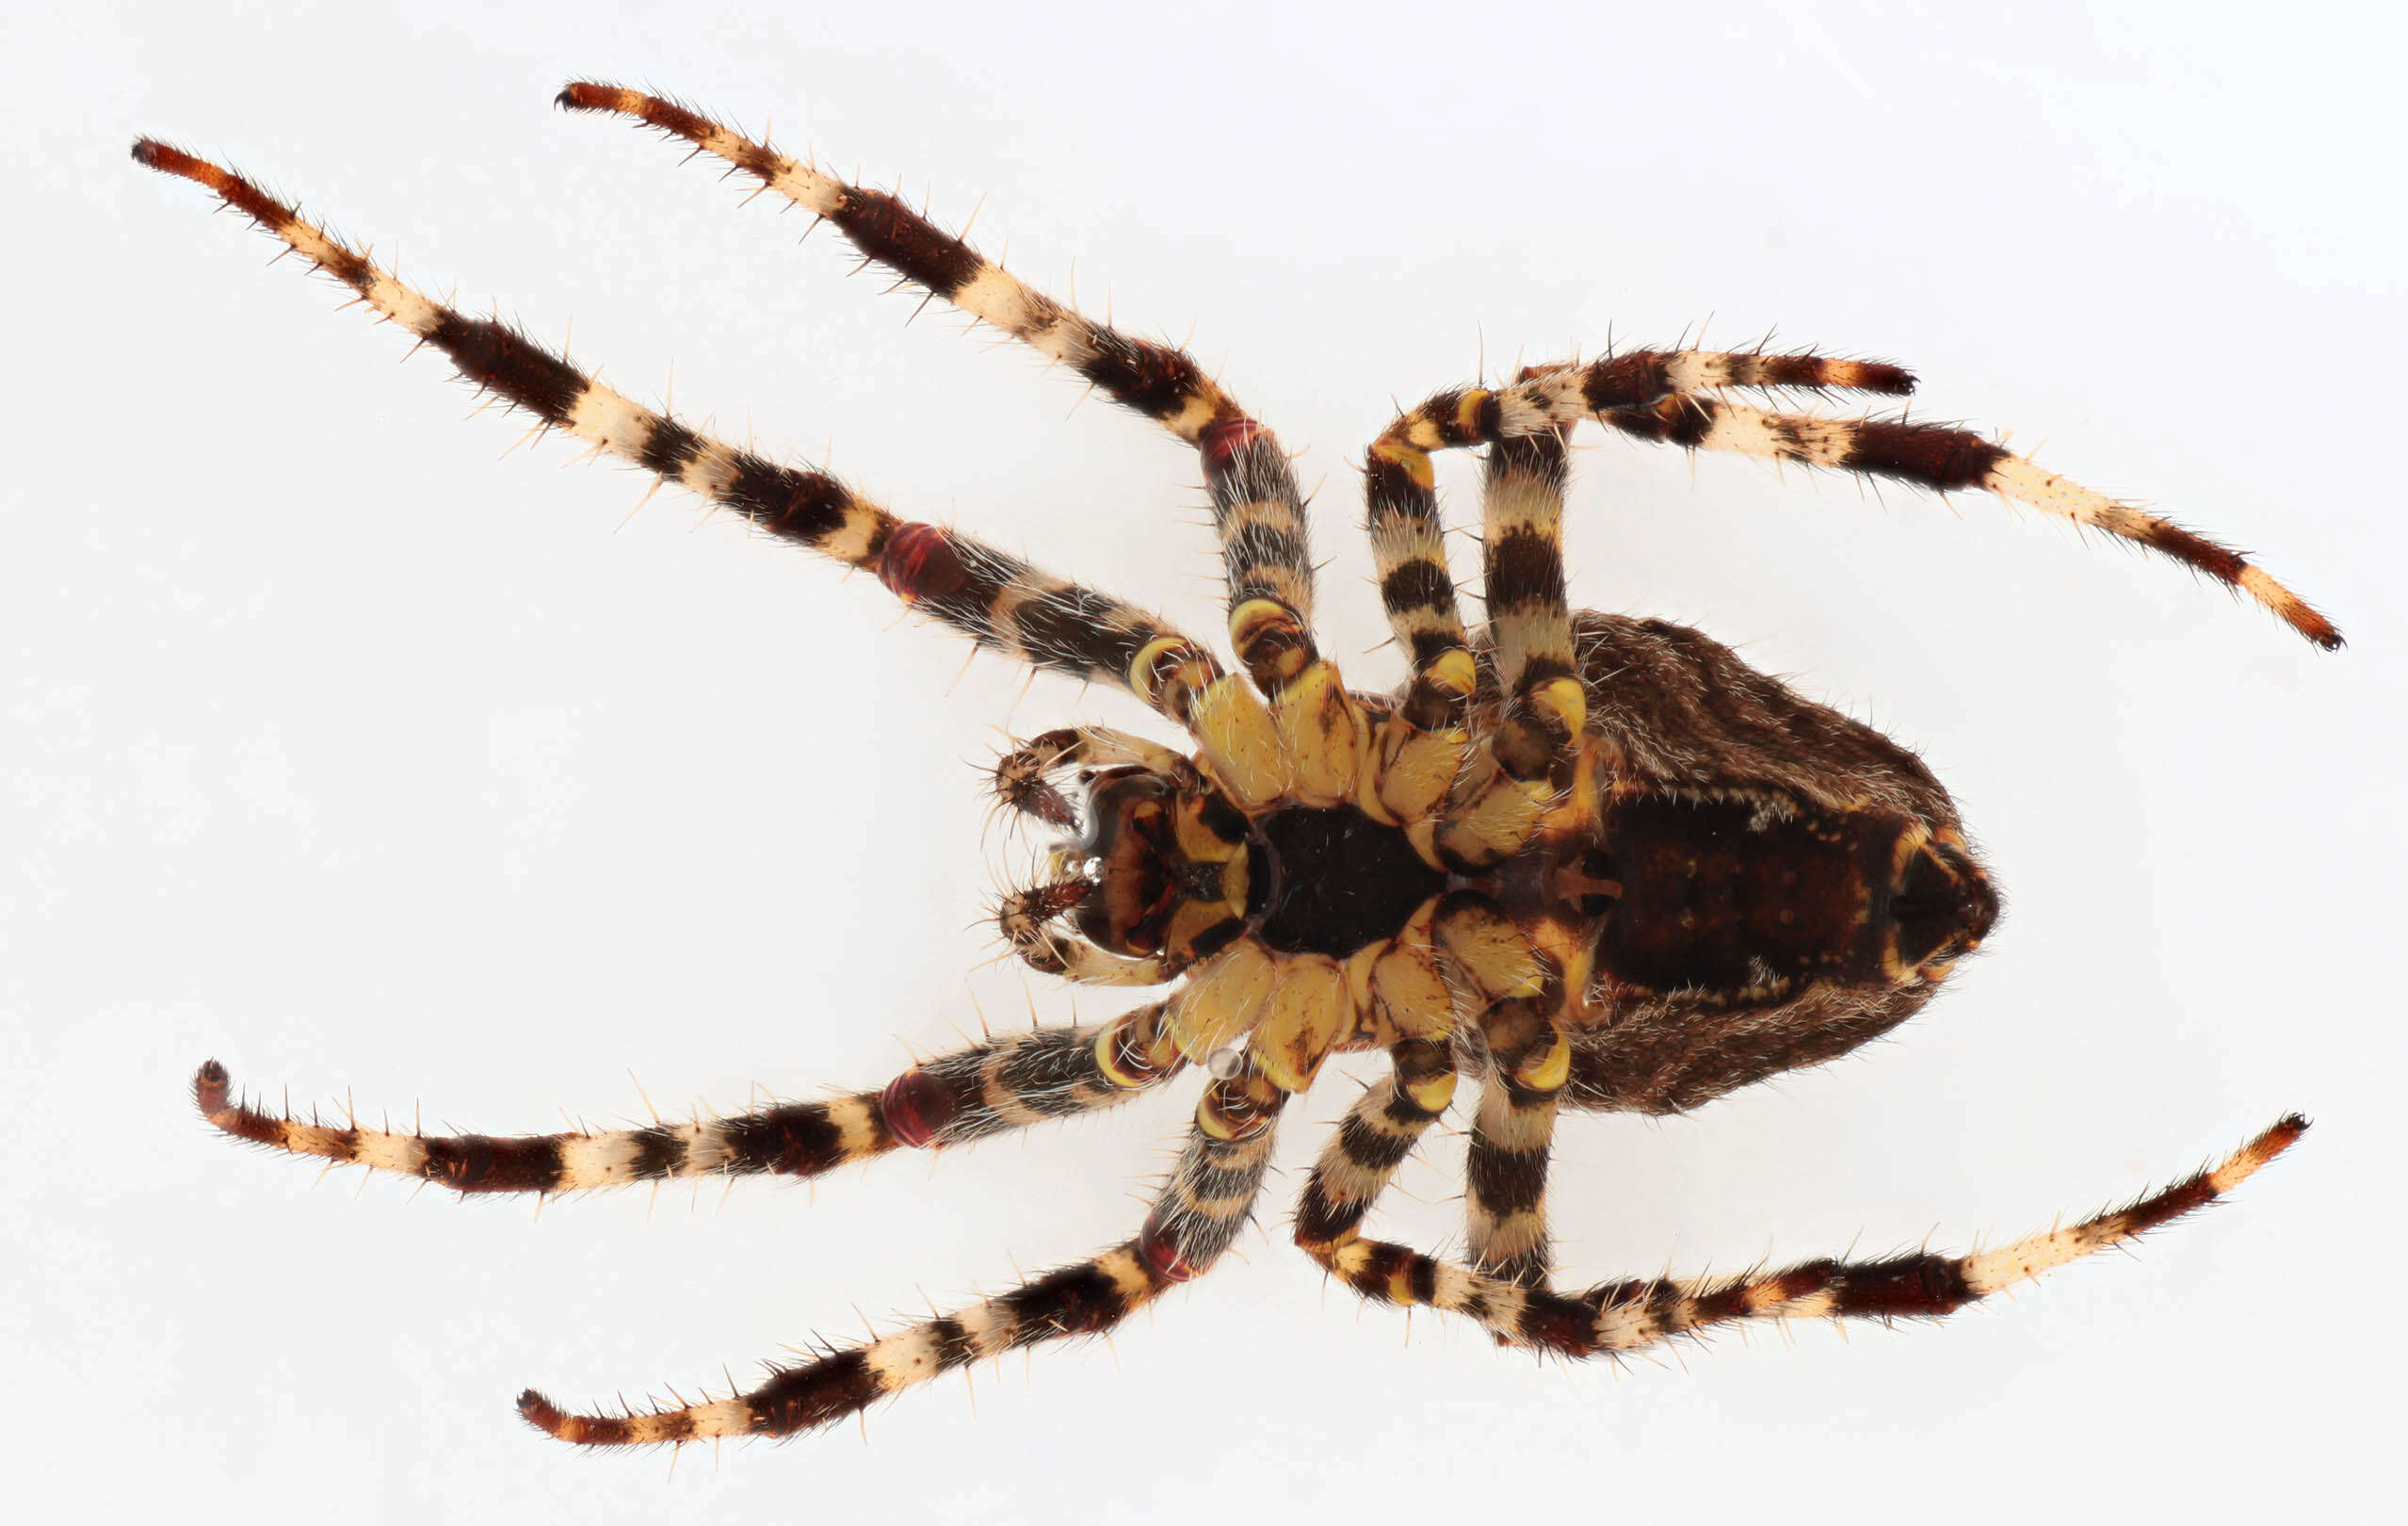 Image of Garden spider